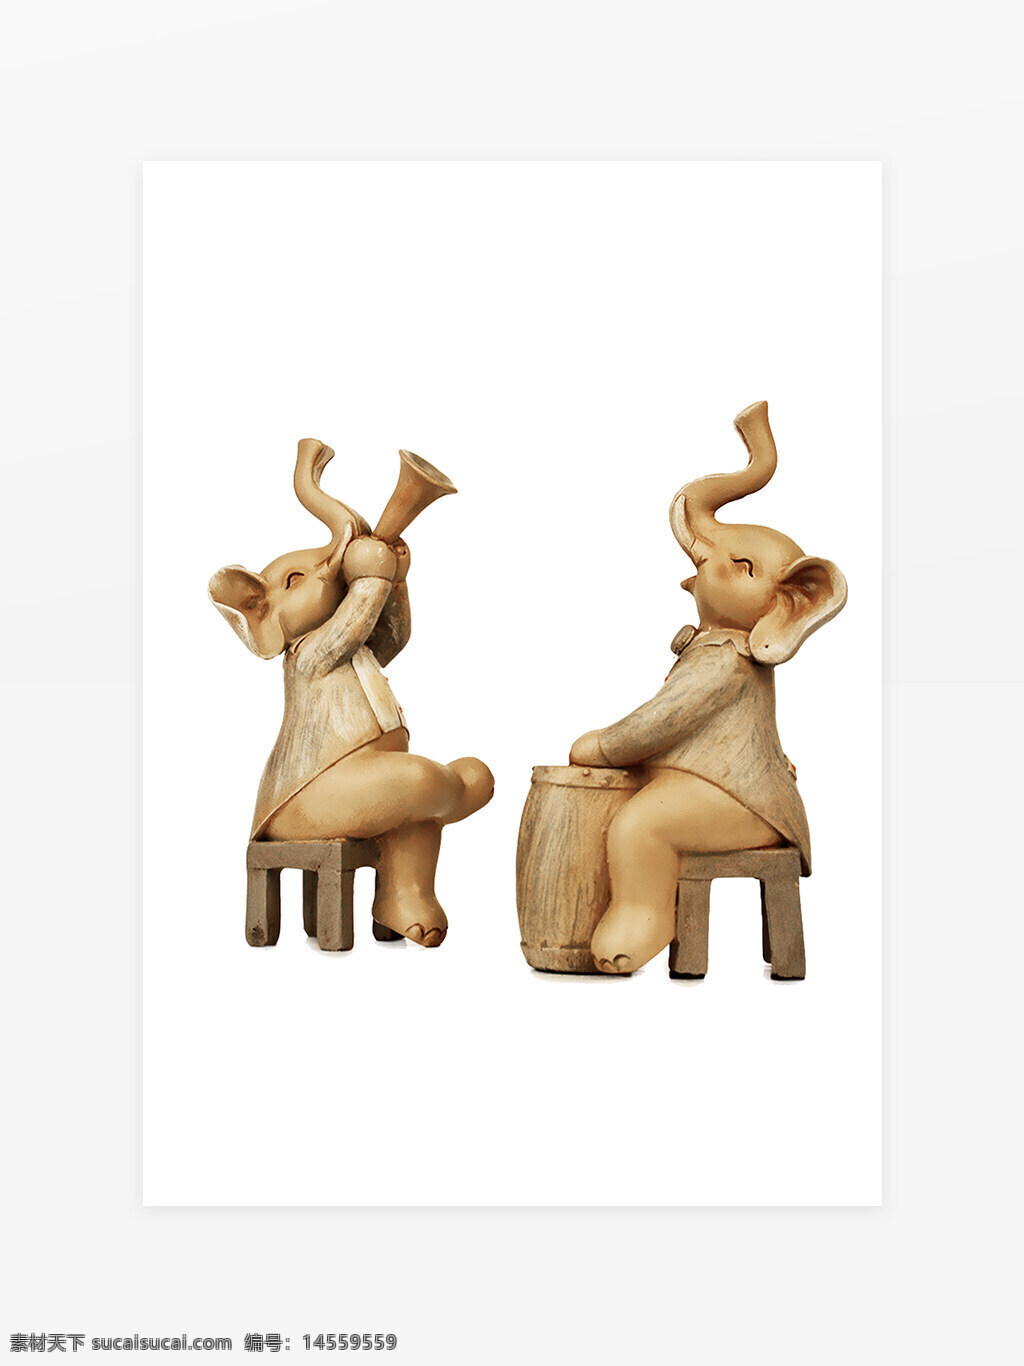 大象玩具摆件 大象装饰 玩具摆件 木刻动物 吹喇叭动物